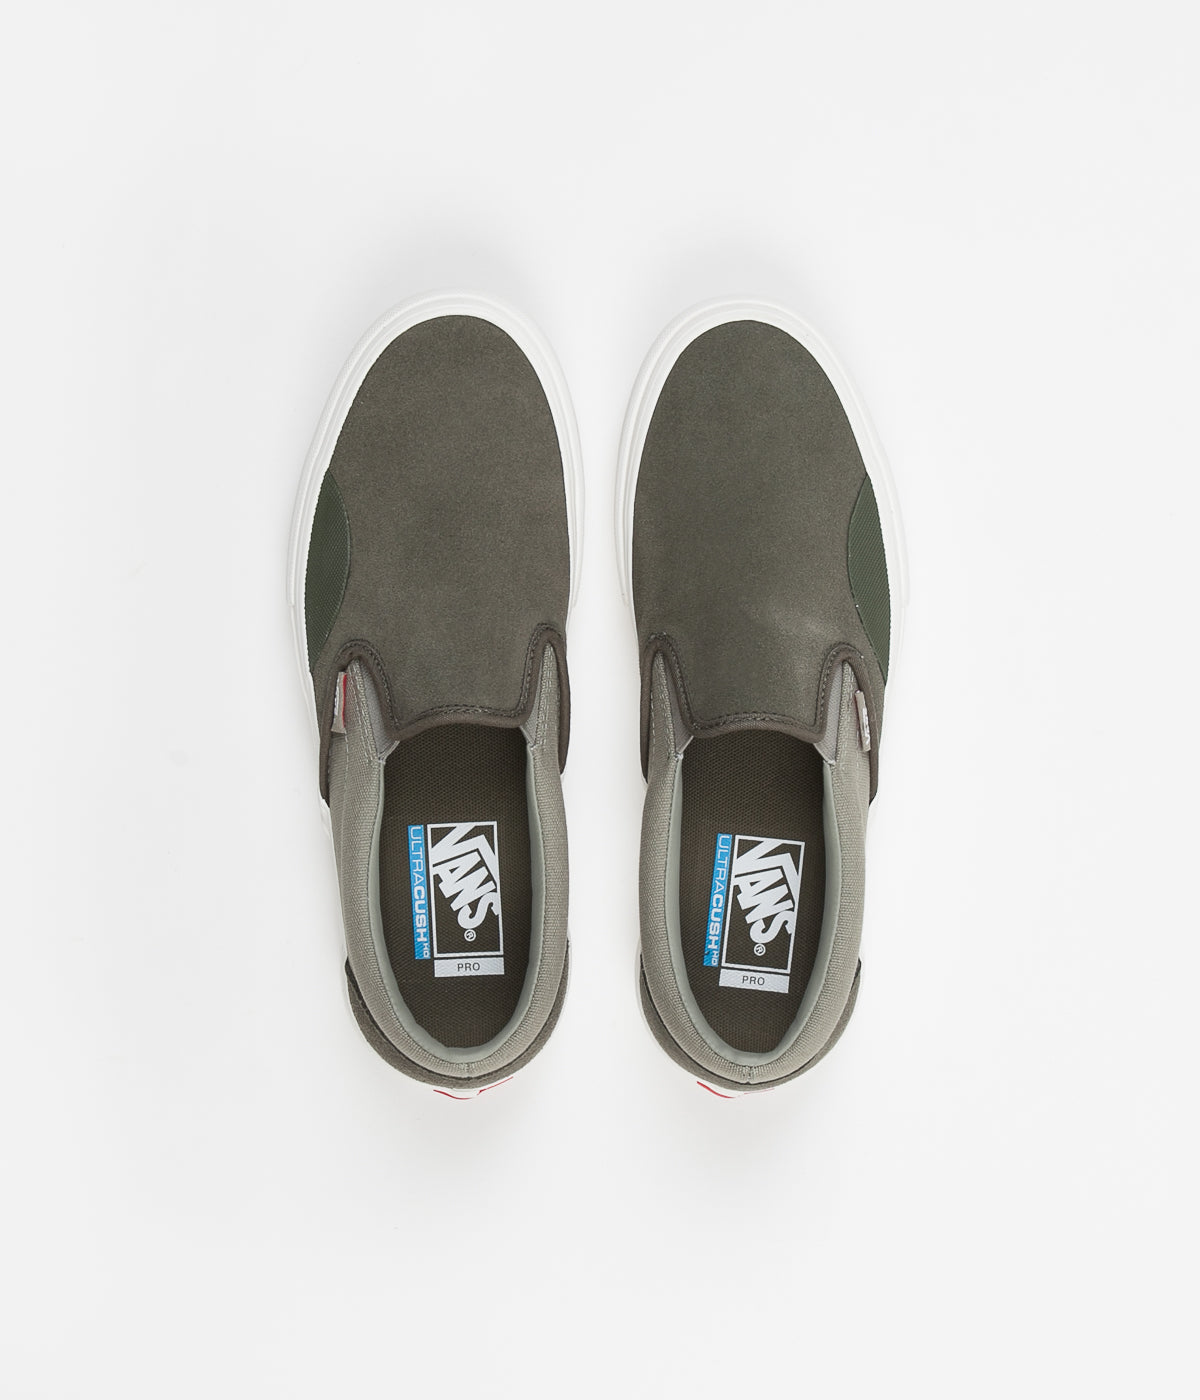 Vans Slip-On Pro Shoes - Grape / Laurel Oak | Flatspot